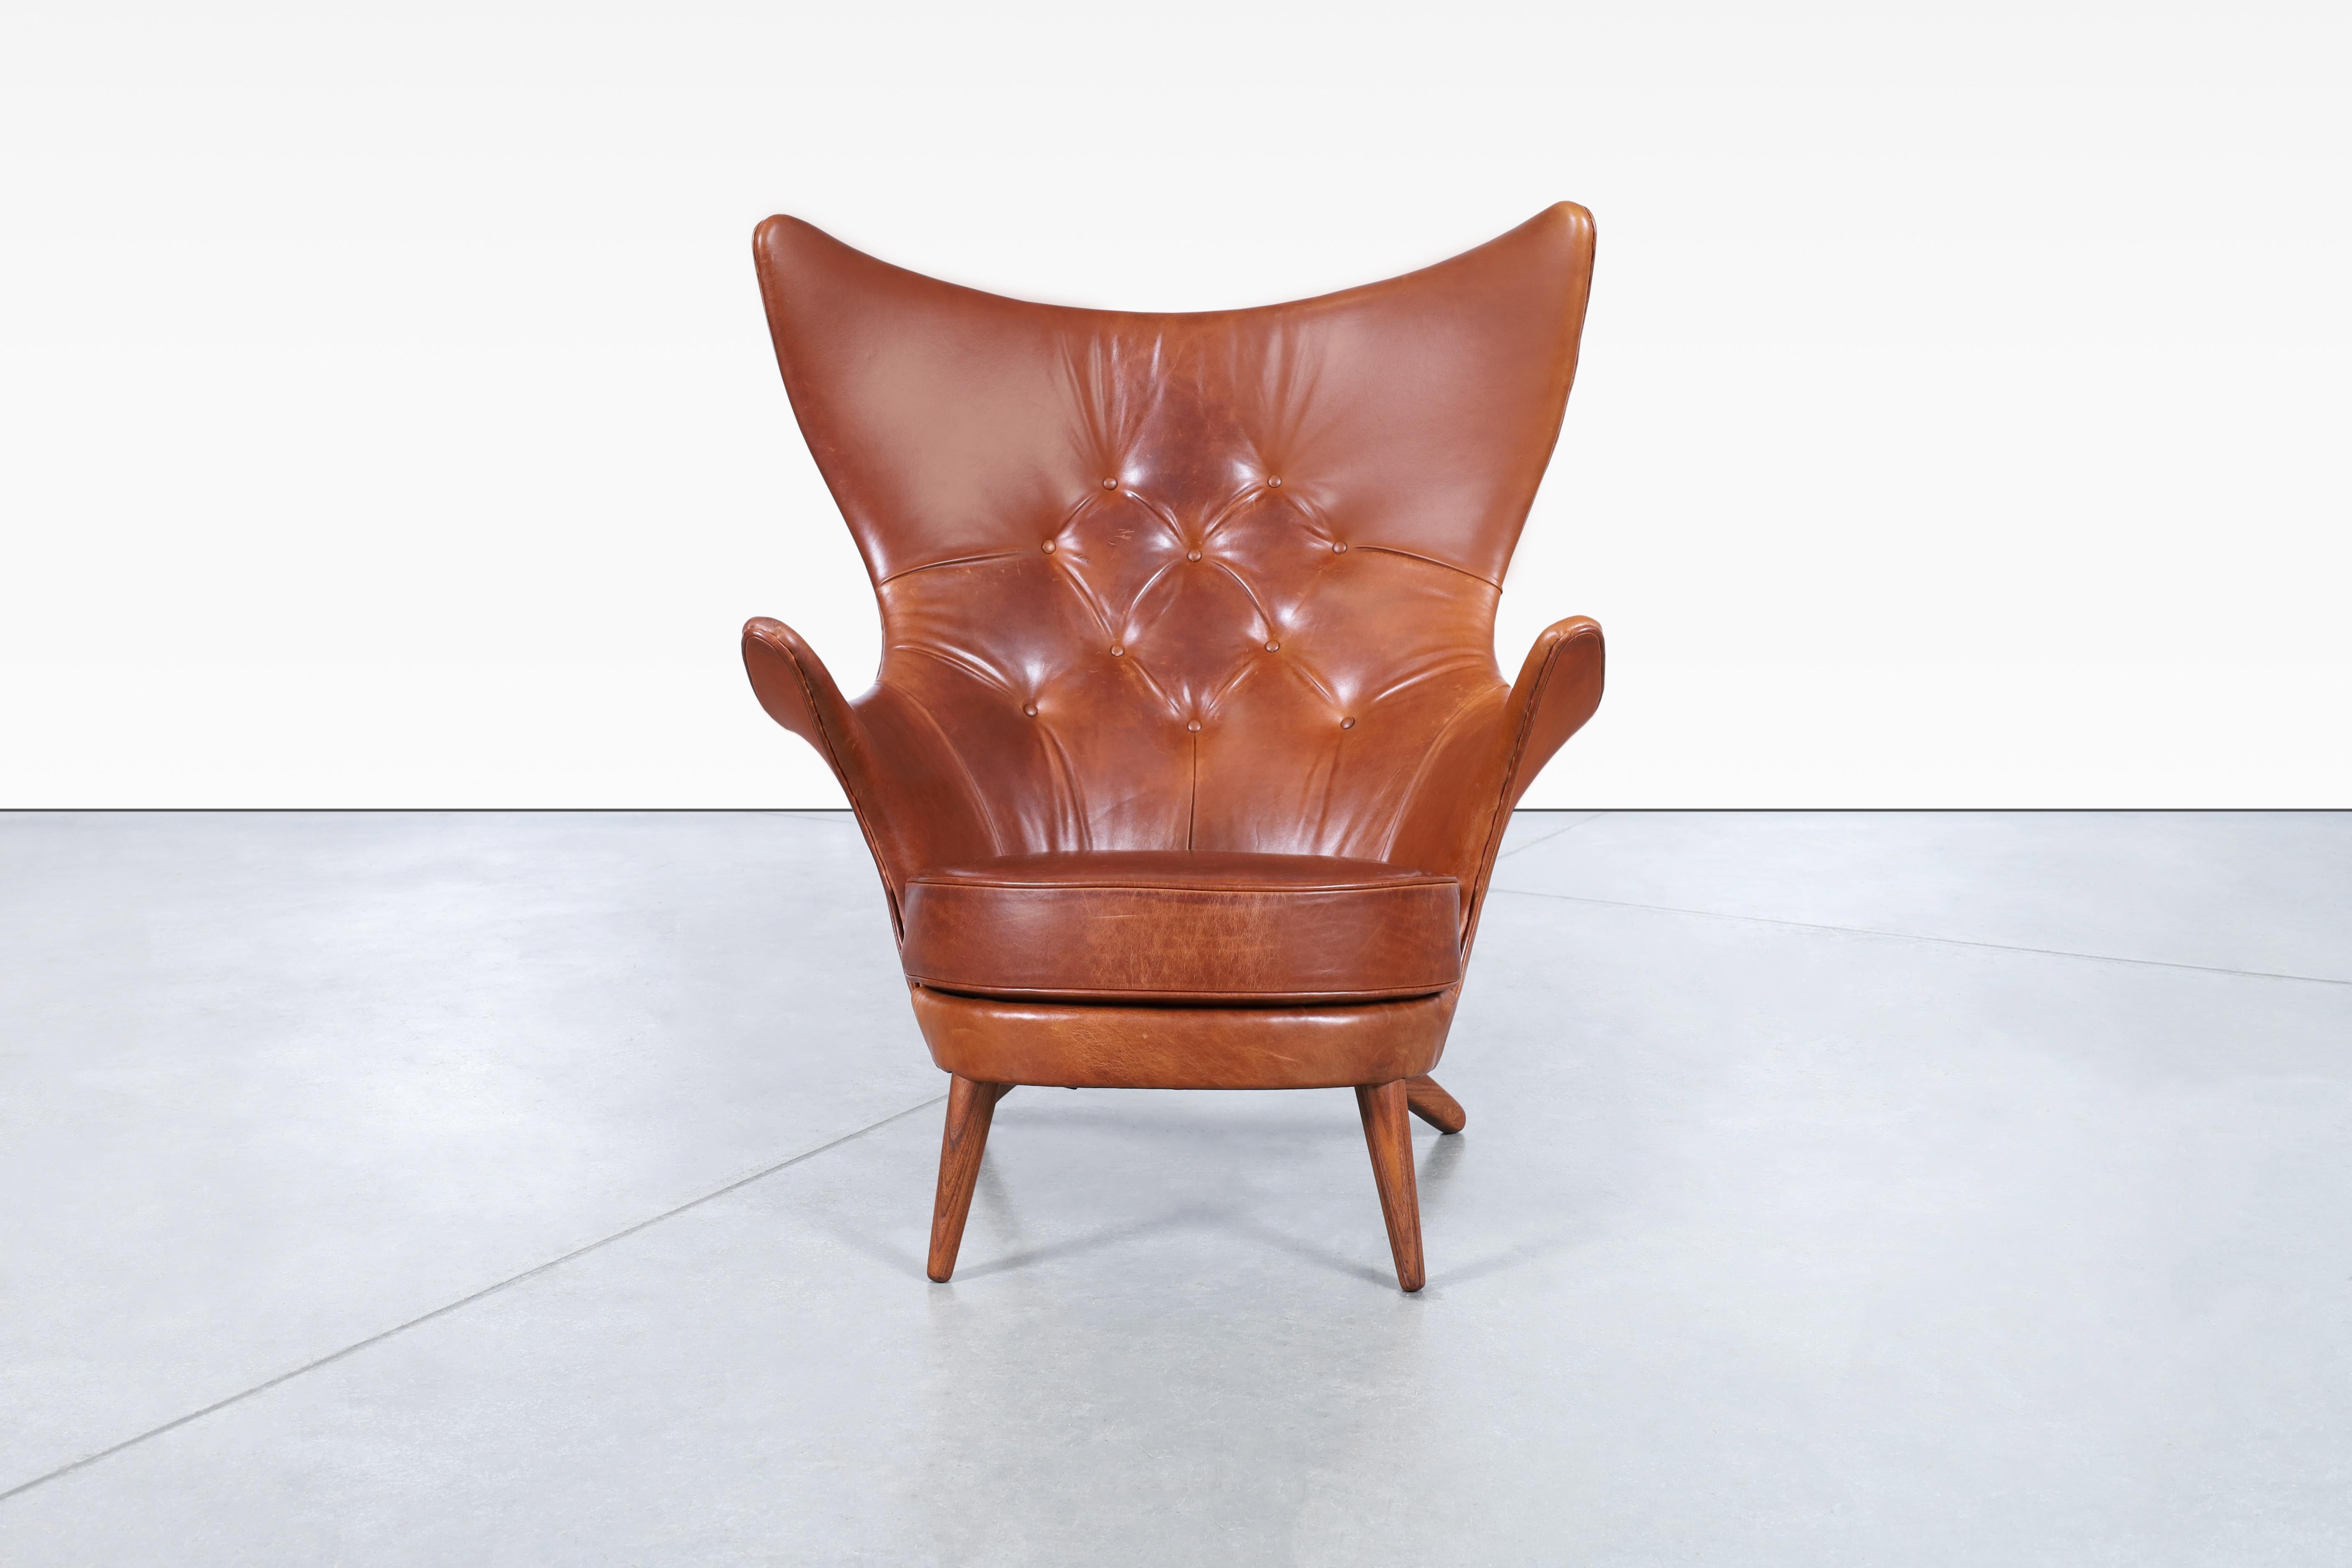 Superbe chaise longue à oreilles en cuir vintage, conçue par Kai Bruun pour Sesam Møbler au Danemark, vers les années 1960. Cette chaise, également connue sous le nom de Siesta, est un véritable témoignage de l'art de la fabrication de meubles, avec